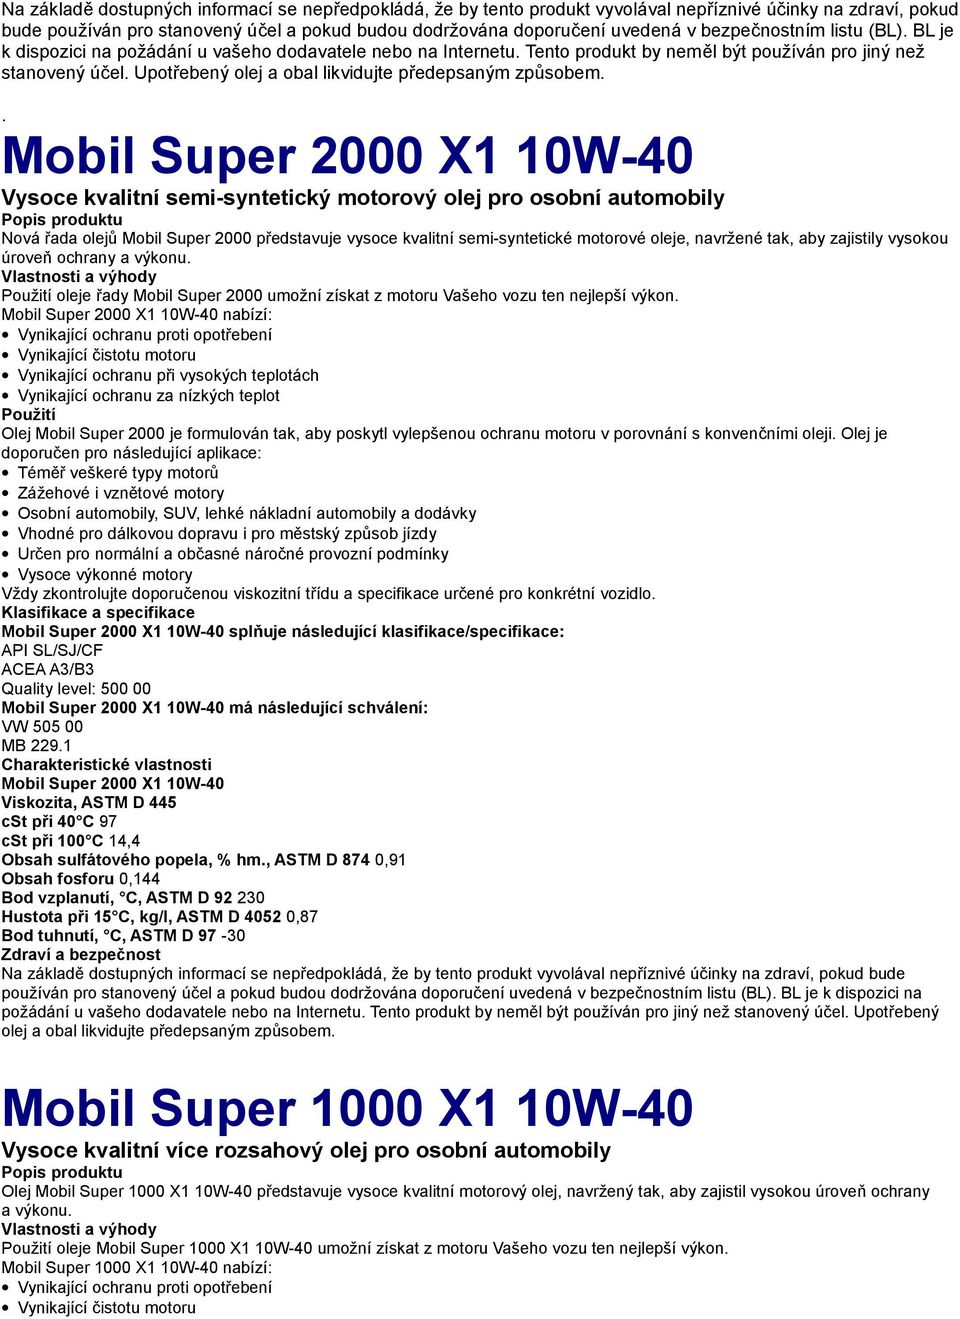 Mobil Super 2000 X1 10W-40 nabízí: Vynikající ochranu proti opotřebení Vynikající čistotu motoru Vynikající ochranu při vysokých teplotách Vynikající ochranu za nízkých teplot Olej Mobil Super 2000